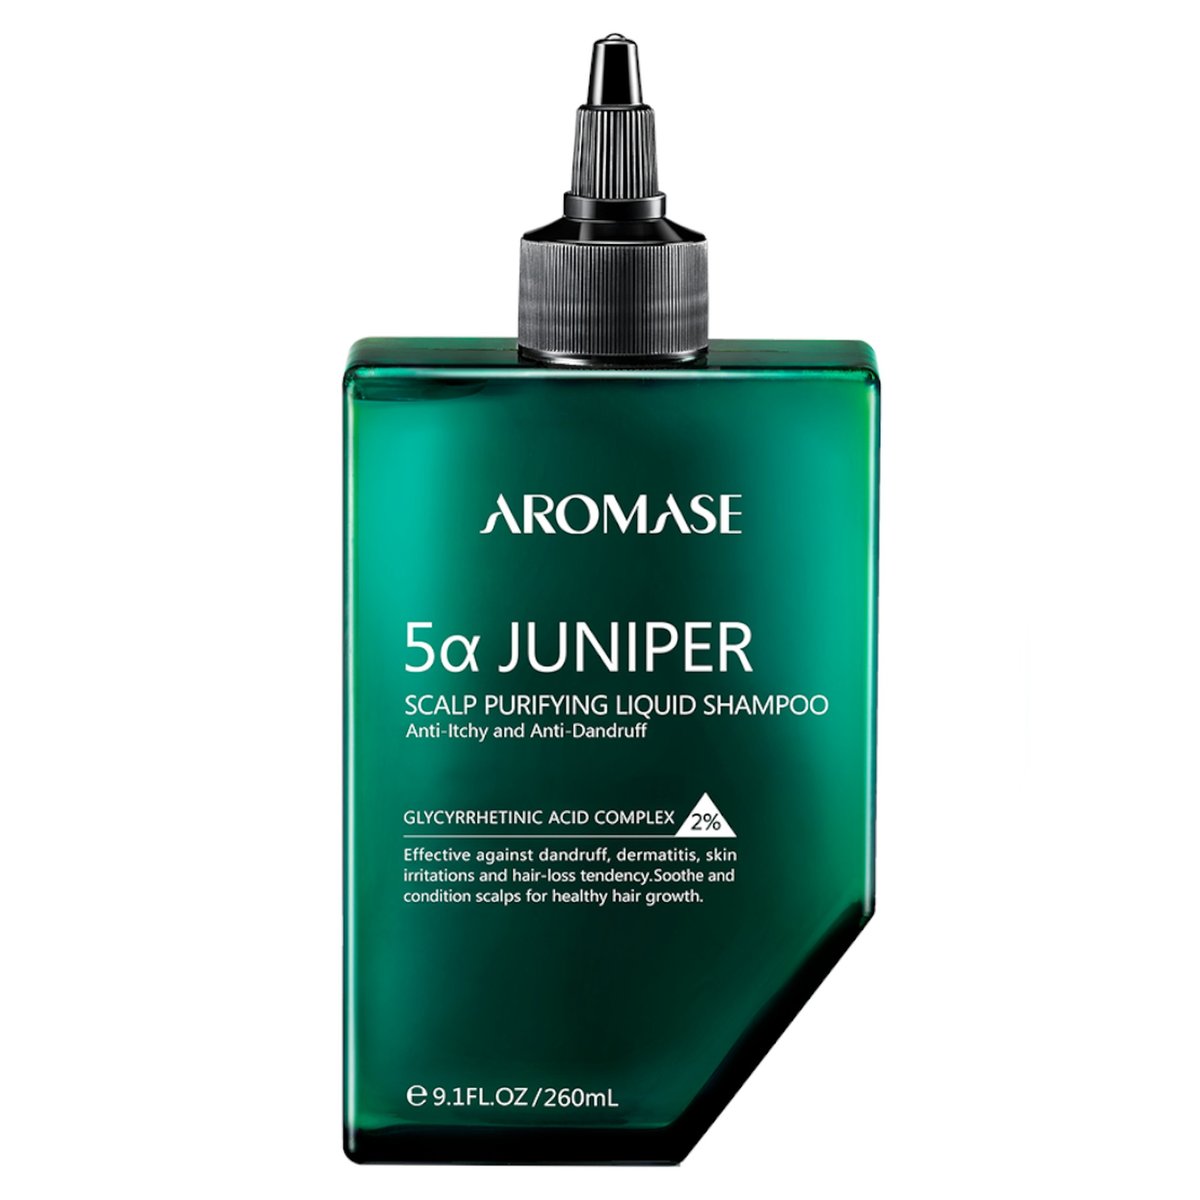 Aromase 5a Juniper - Szampon płyn oczyszczający skórę głowy 260ml